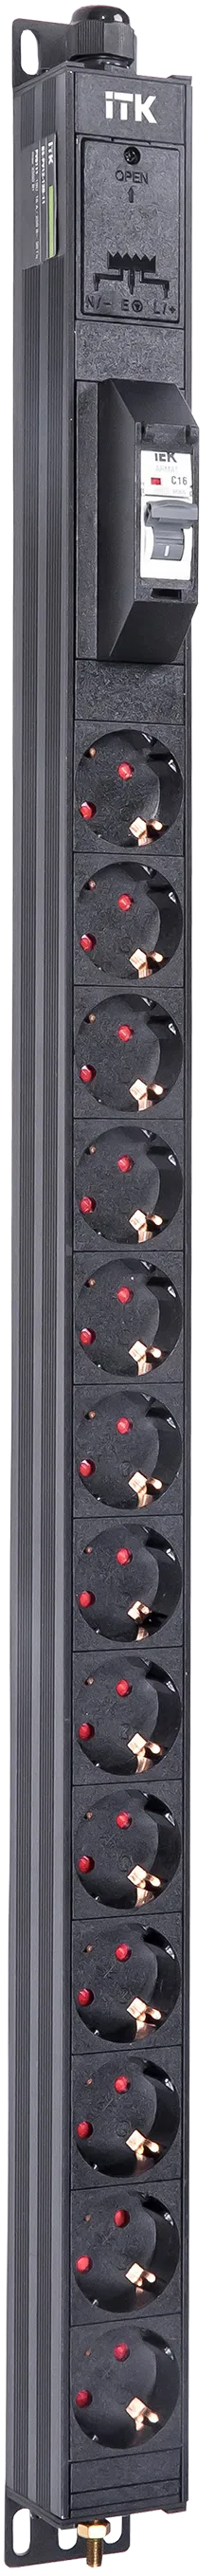 Вертикальный однотипный блок распределения питания PDU ITK включает в себя 13 розеток Schuko. PDU ITK изготавливается из высококачественных термостойких материалов и пластмасс, оснащается 2,6 метровым кабелем электропитания с вилкой Schuko. PDU ITK прекрасно справляется с задачей по электроснабжению сетевого оборудования в шкафах и стойках, а также с требованием защиты от токов короткого замыкания и перенапряжения. PDU ITK соответствует российским и международным стандартам качества и устанавливается с помощью кронштейнов, при этом положение кронштейнов можно менять, либо безынструментальным методом при помощи монтажных штифтов.